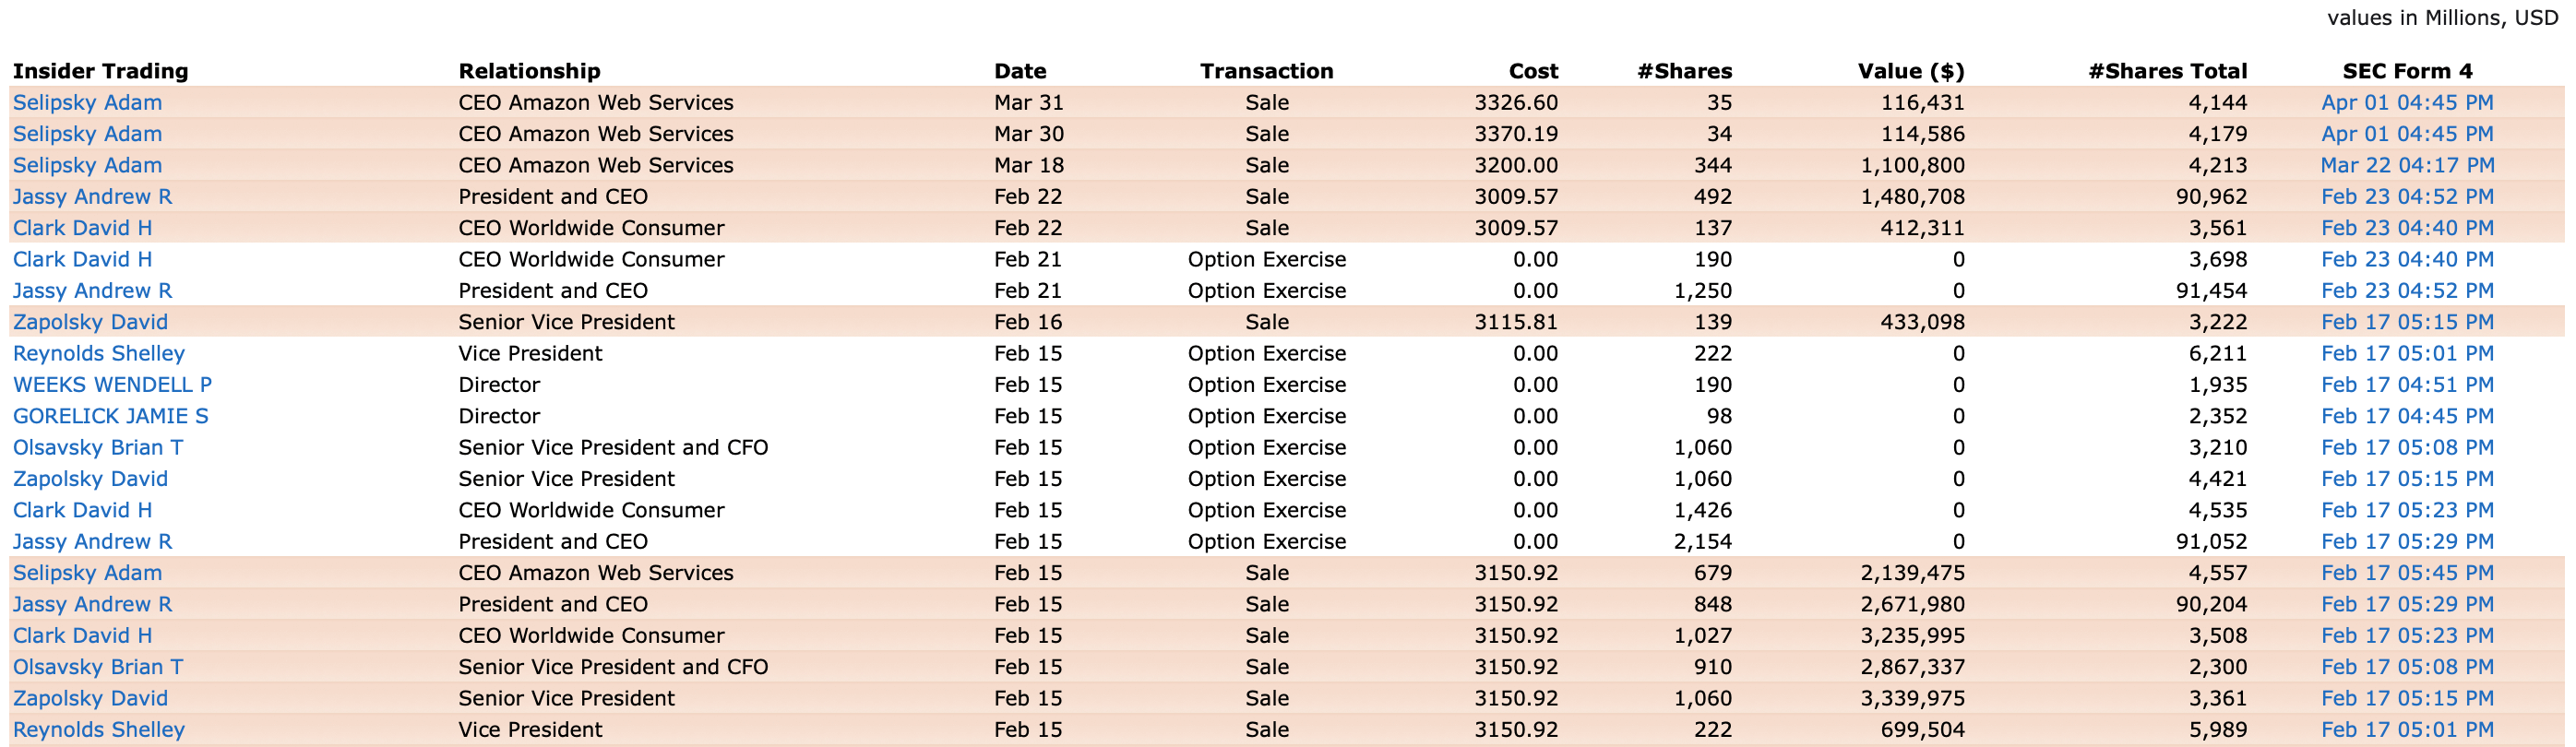 Сделки инсайдеров с акциями компании Amazon.com, Inc. с 1 февраля 2022 г. по 2 мая 2022 г.